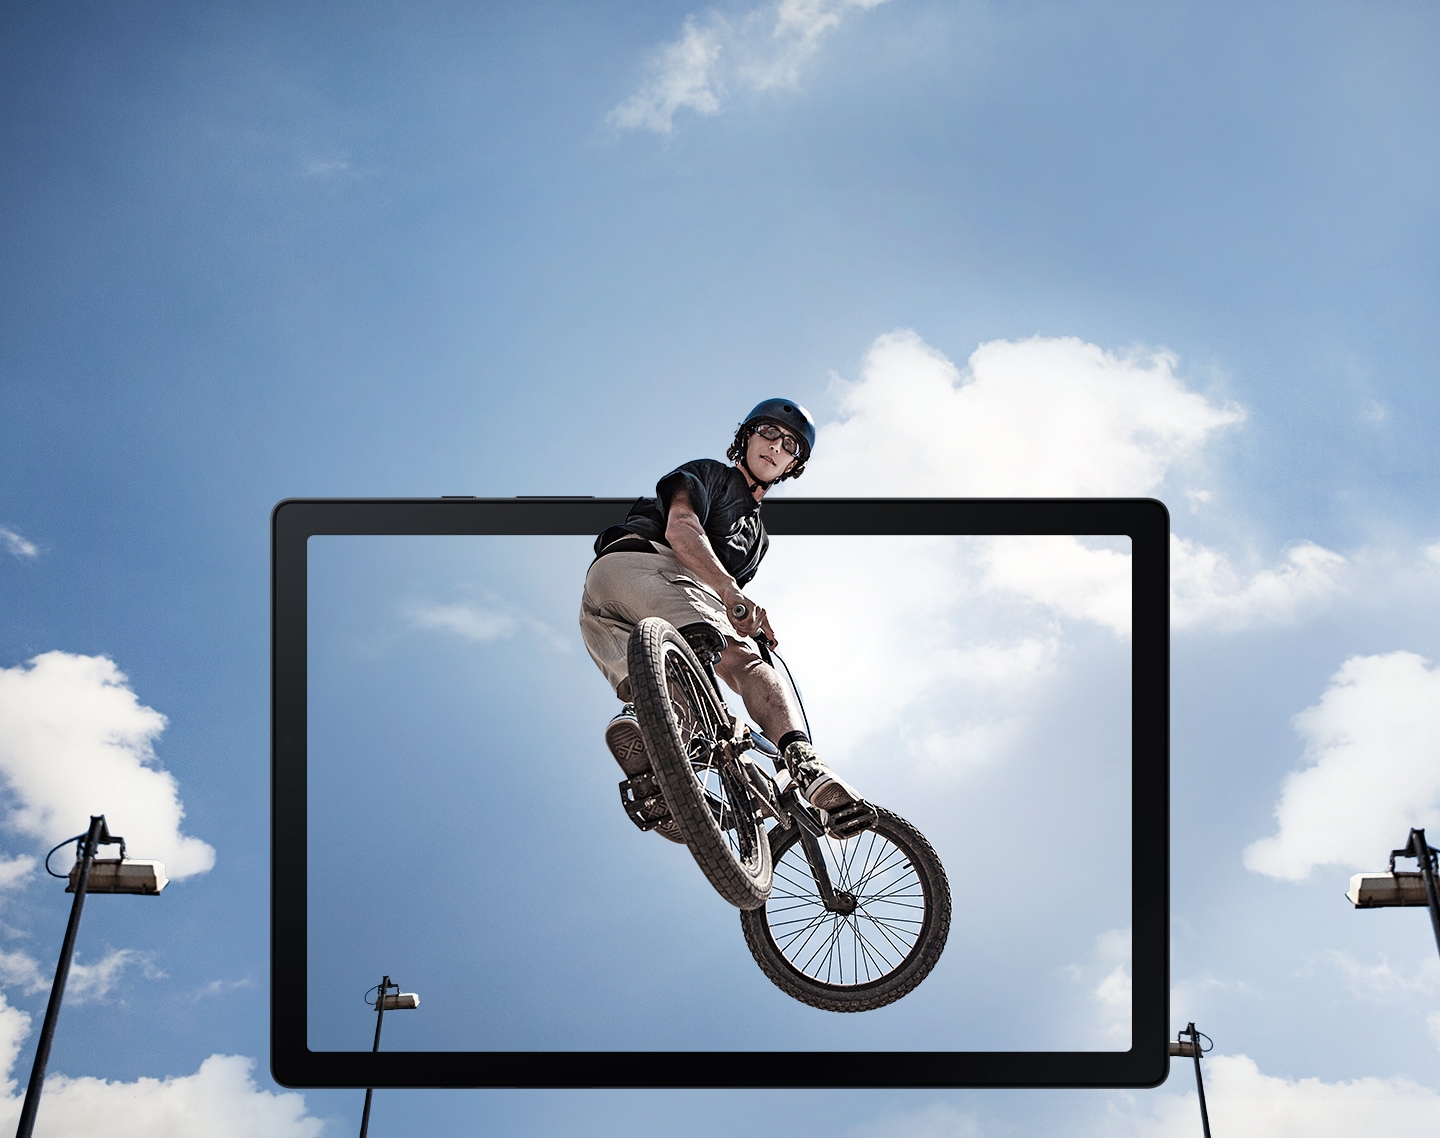 Čovjek koji skače na BMX biciklu u zraku prikazan je kako iskače sa ekrana tableta.